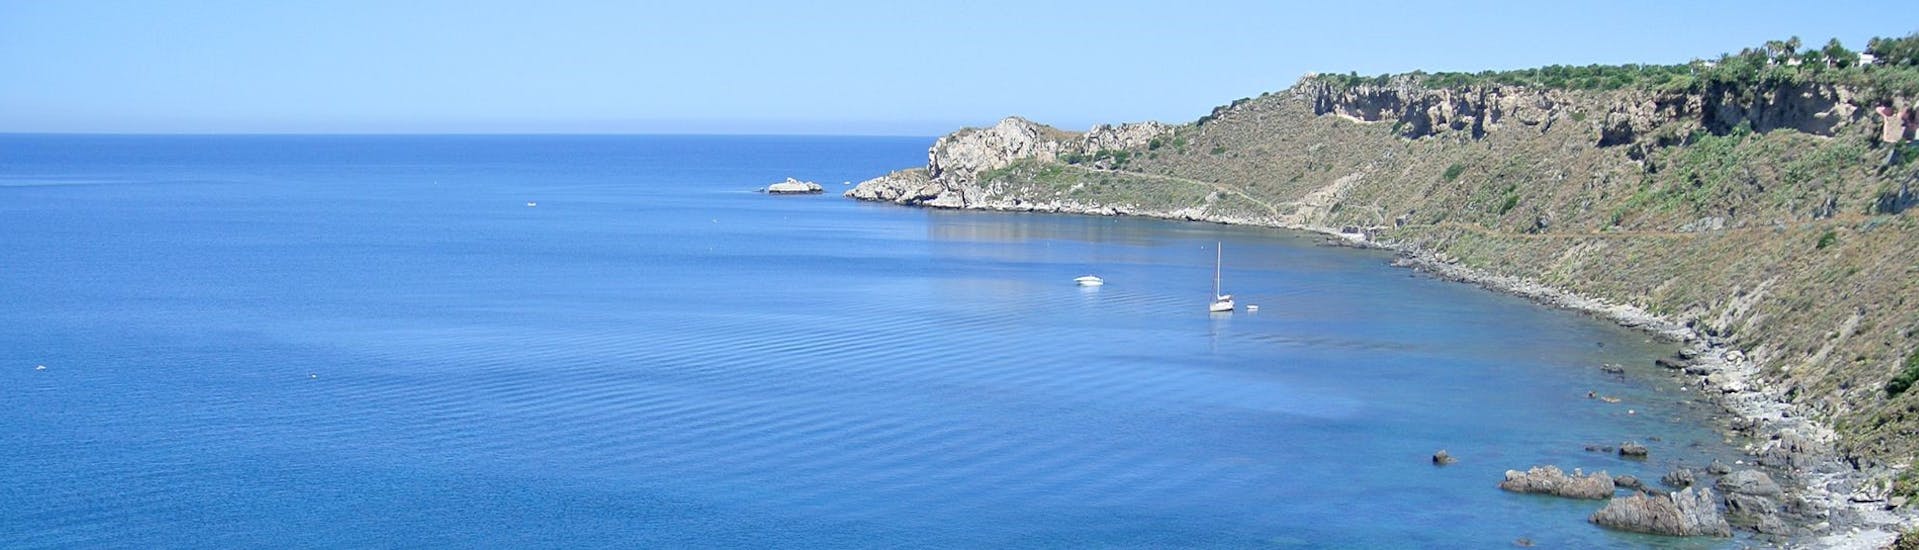 Vista dalla barca di Sky Sea Charter durante la gita in barca privata da Milazzo verso Vulcano e Lipari.